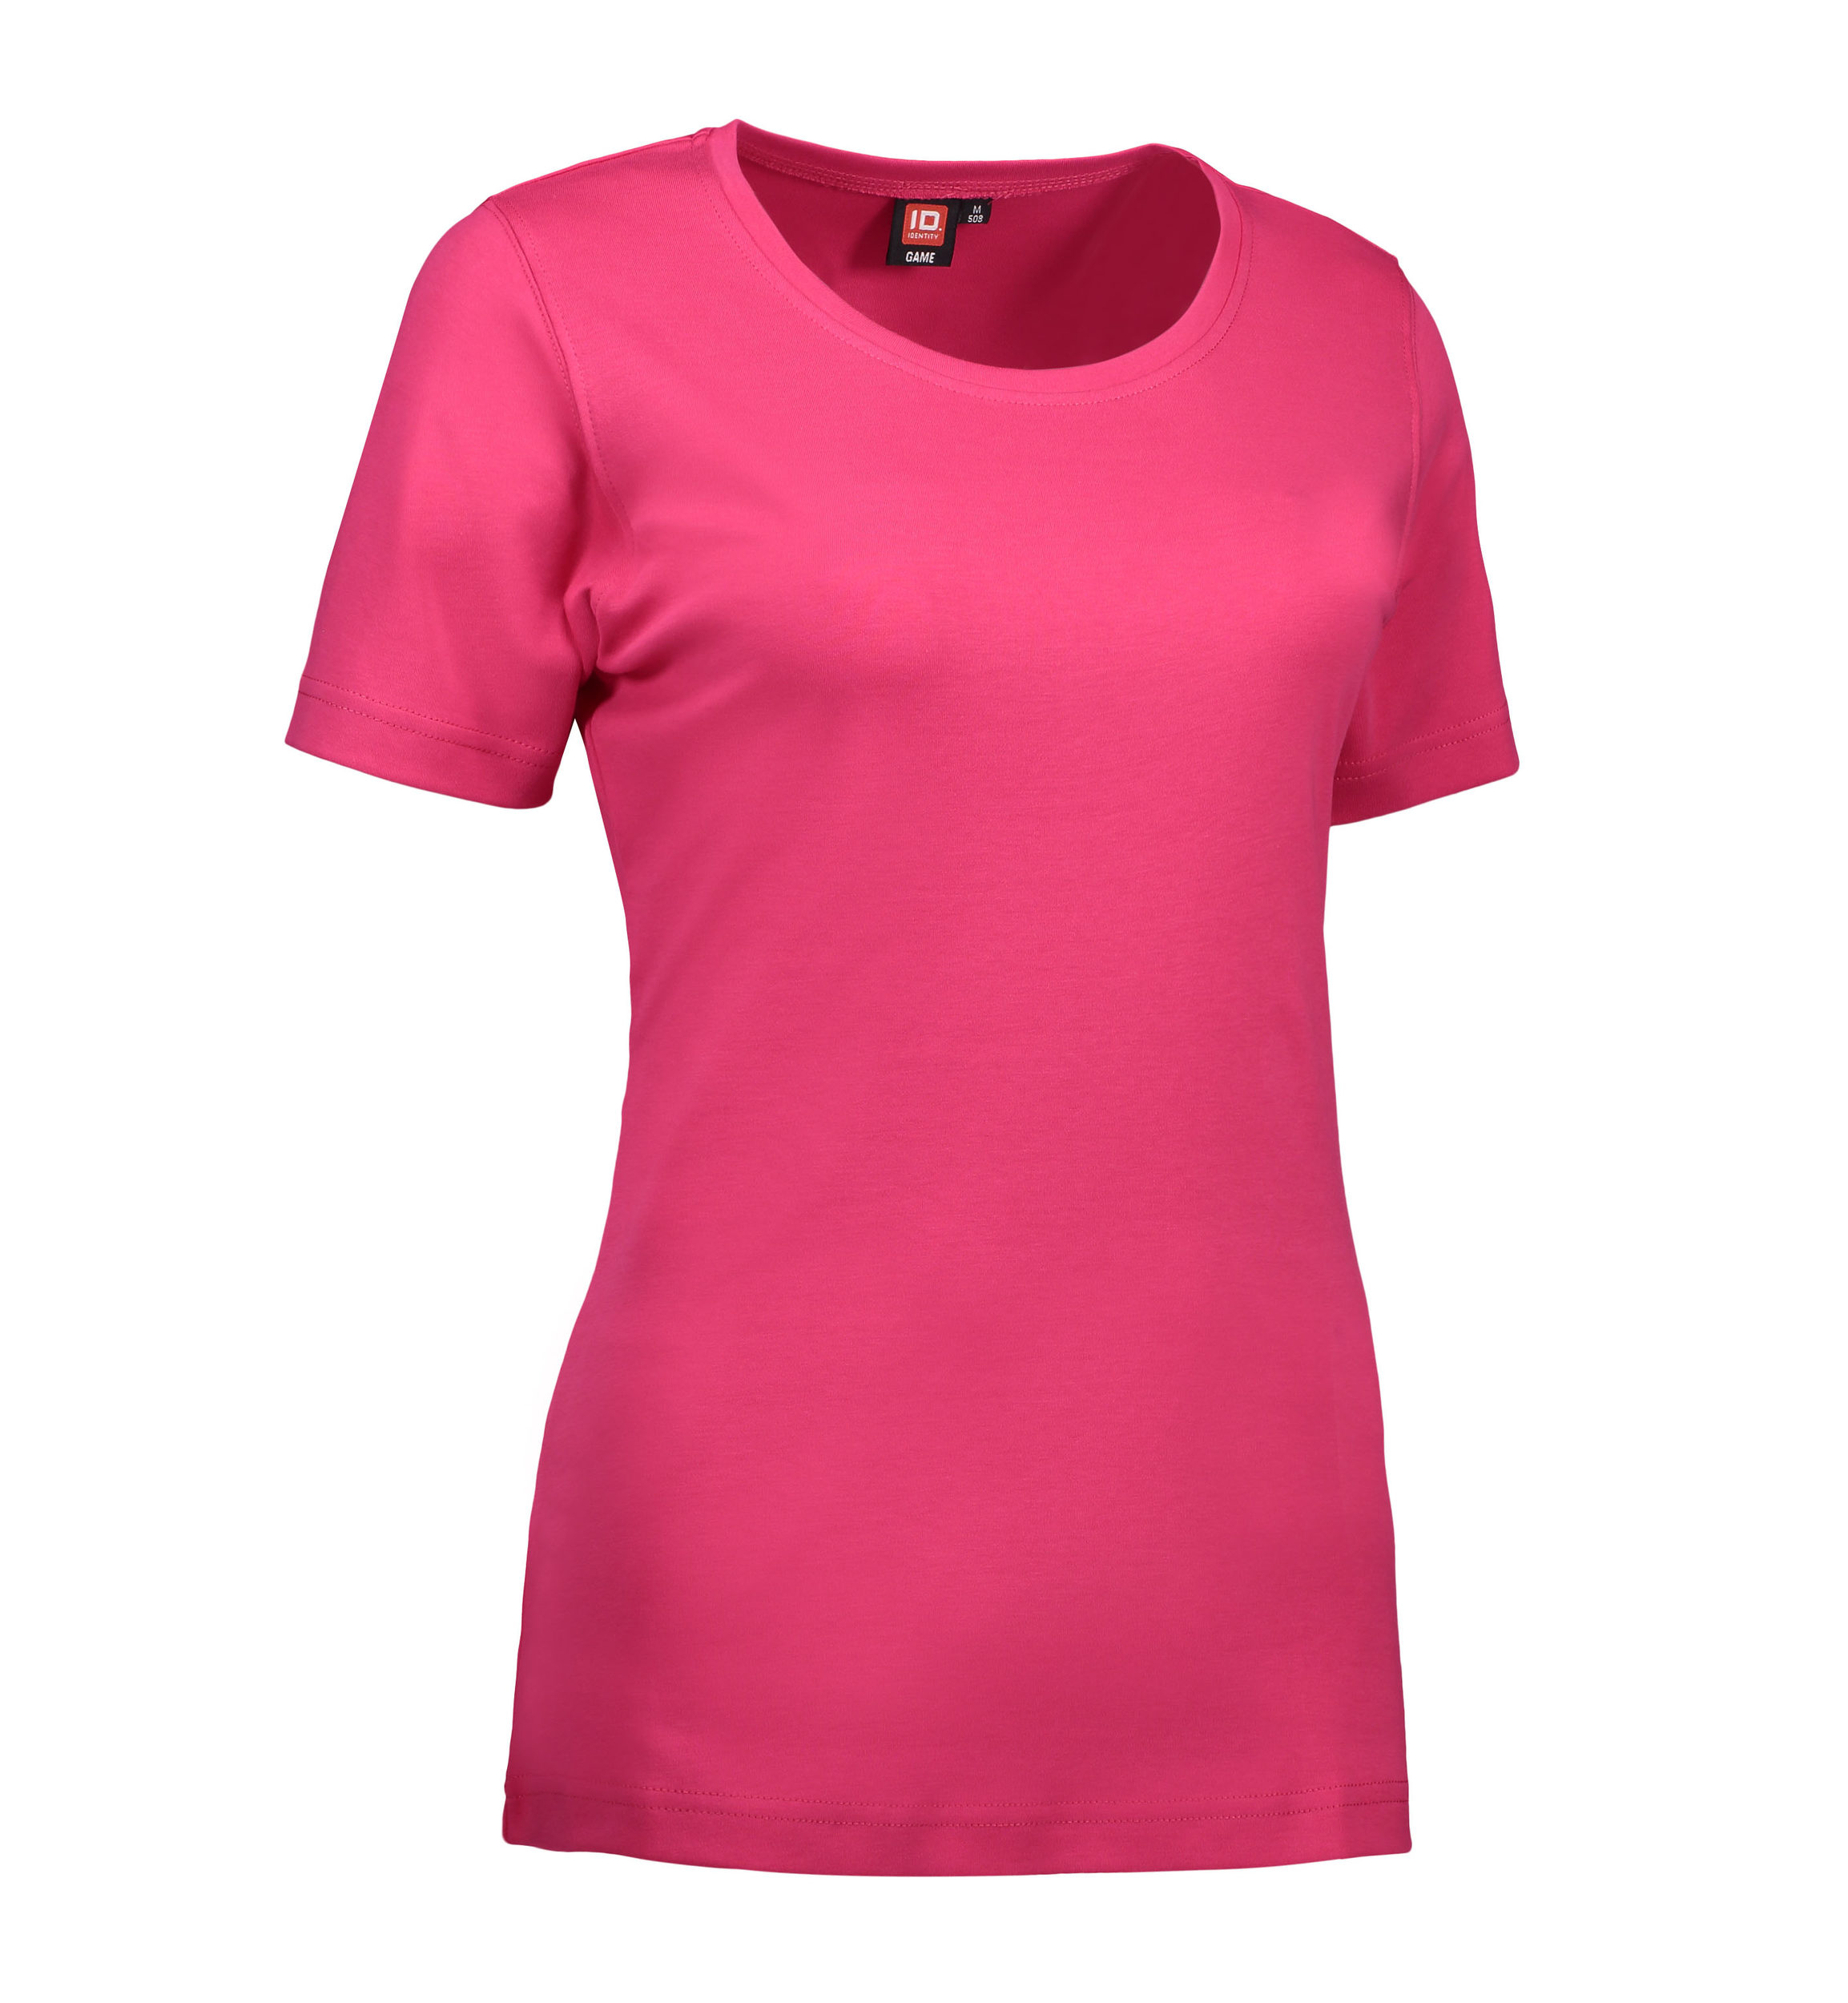 Billede af Dame t-shirt med rund hals i pink - M hos Sygeplejebutikken.dk